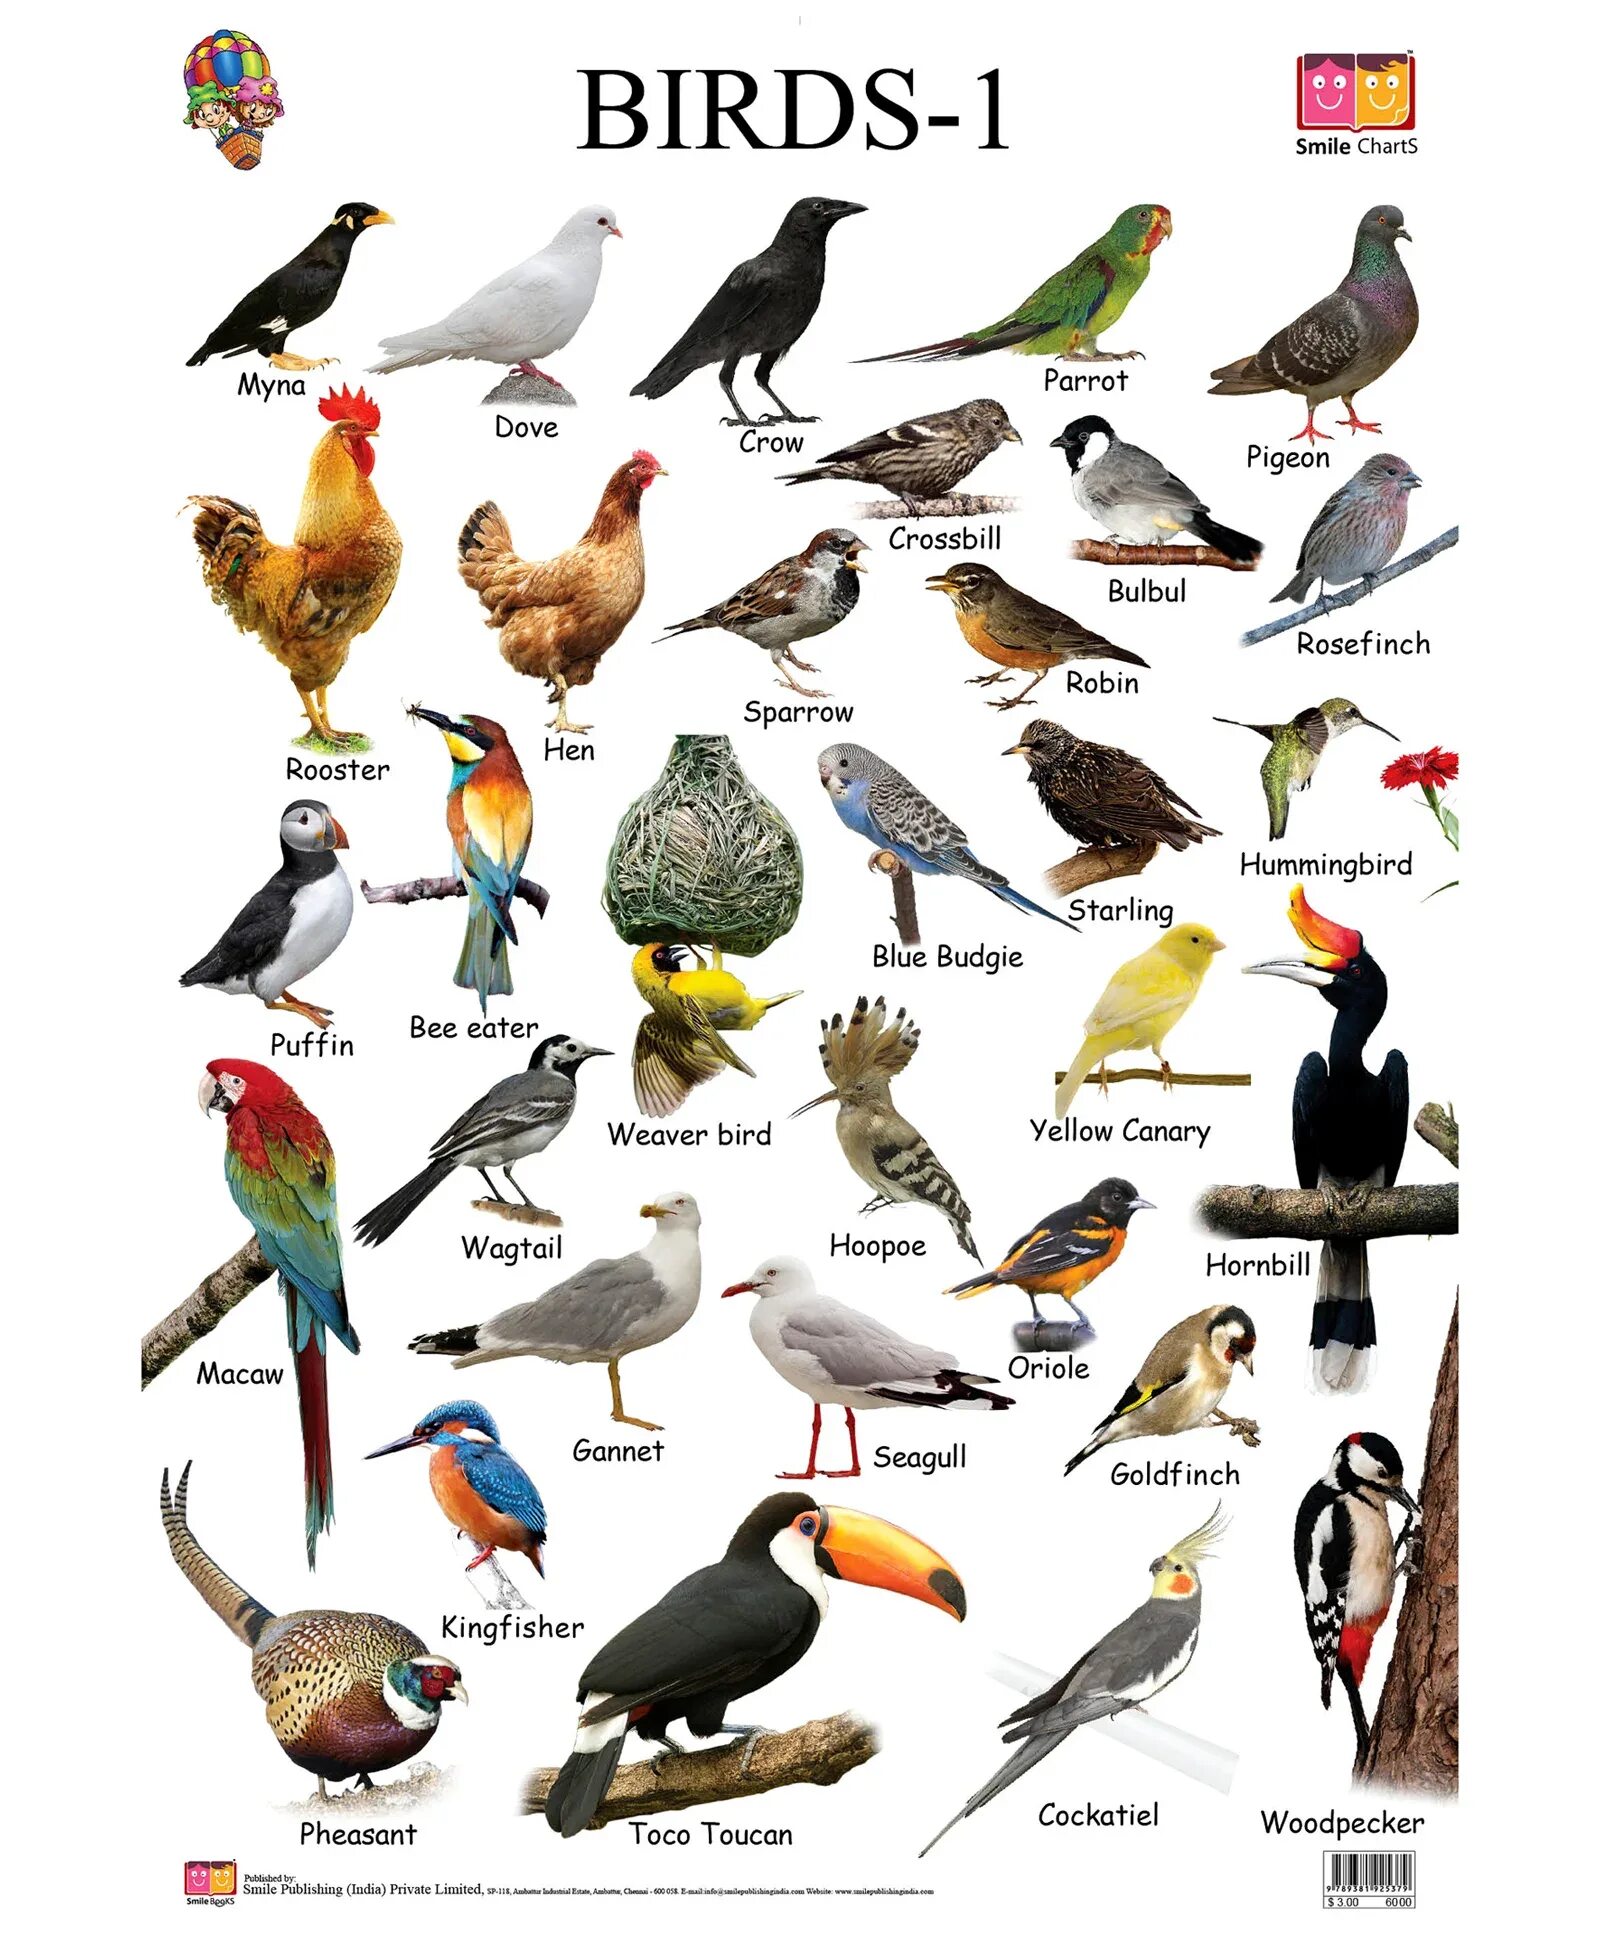 Название птиц. Птицы на английском языке. Названия птиц на англ. Birds названия. Перевести птиц на английский